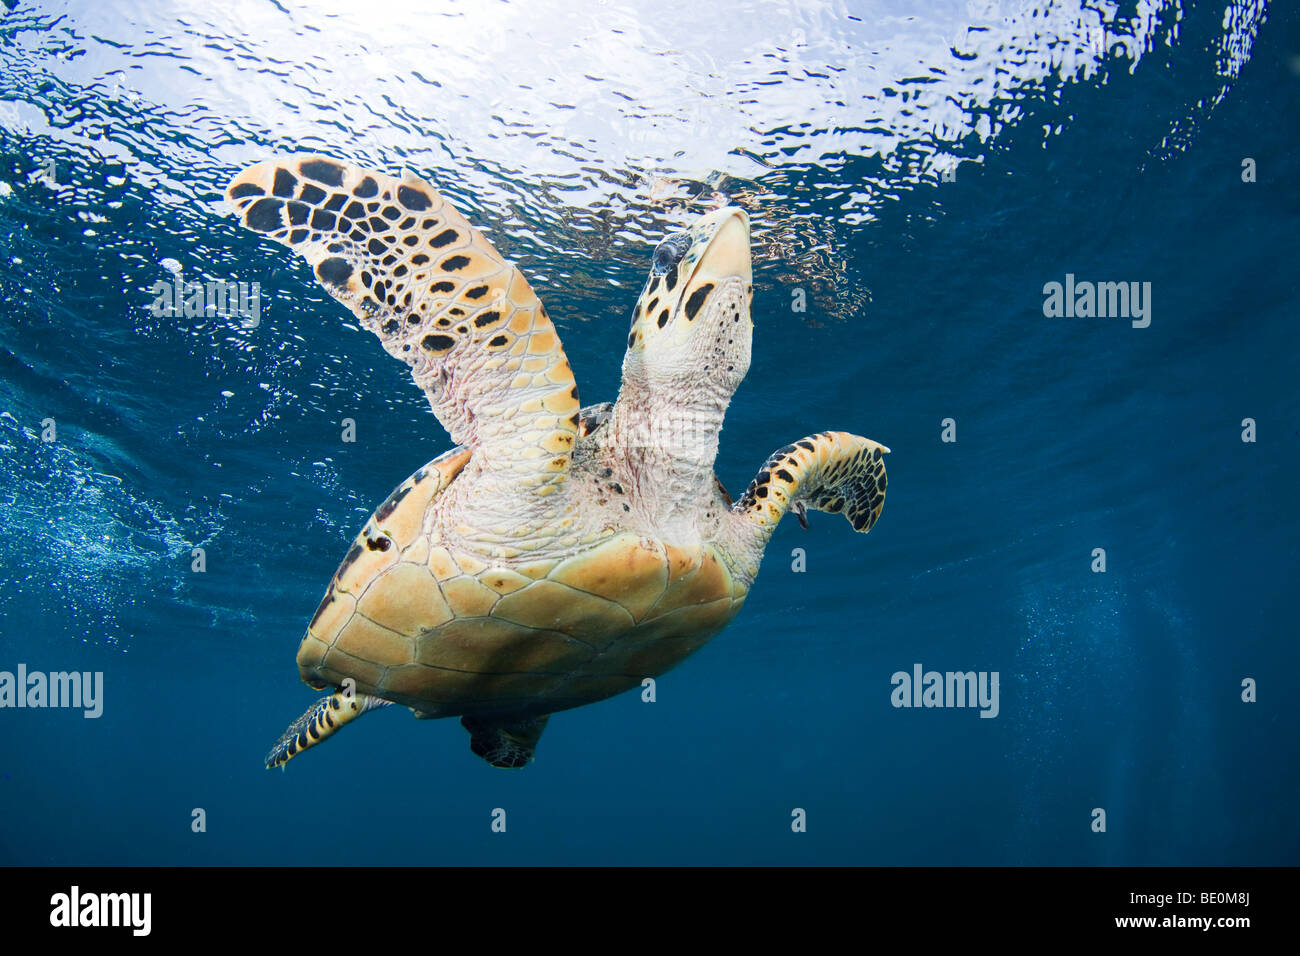 La tortue imbriquée, Eretmochelys imbricata, Bonaire, Antilles néerlandaises, des Caraïbes. Banque D'Images